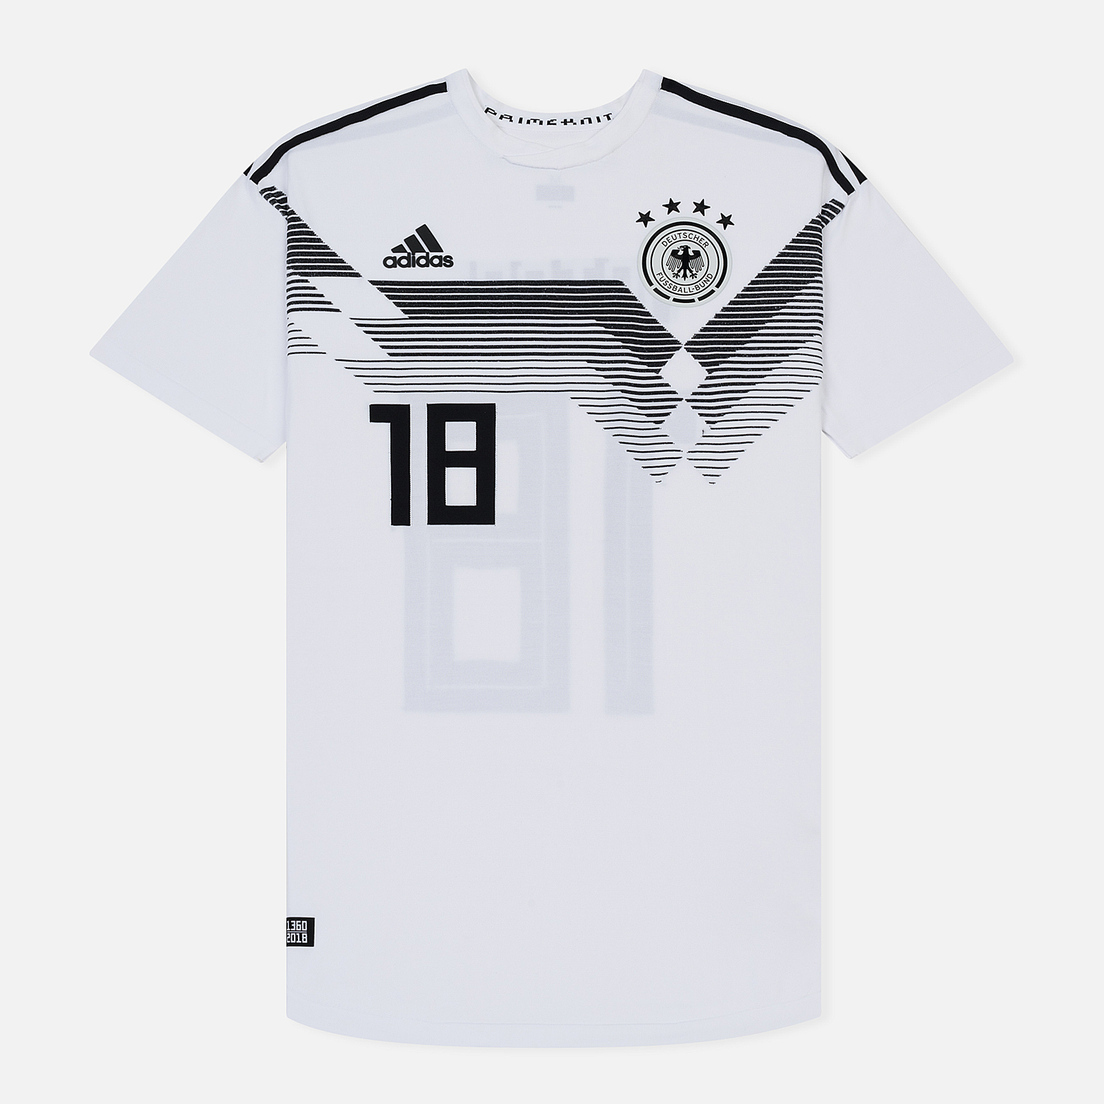 adidas Football Мужская футболка DFB Home Jersey 18